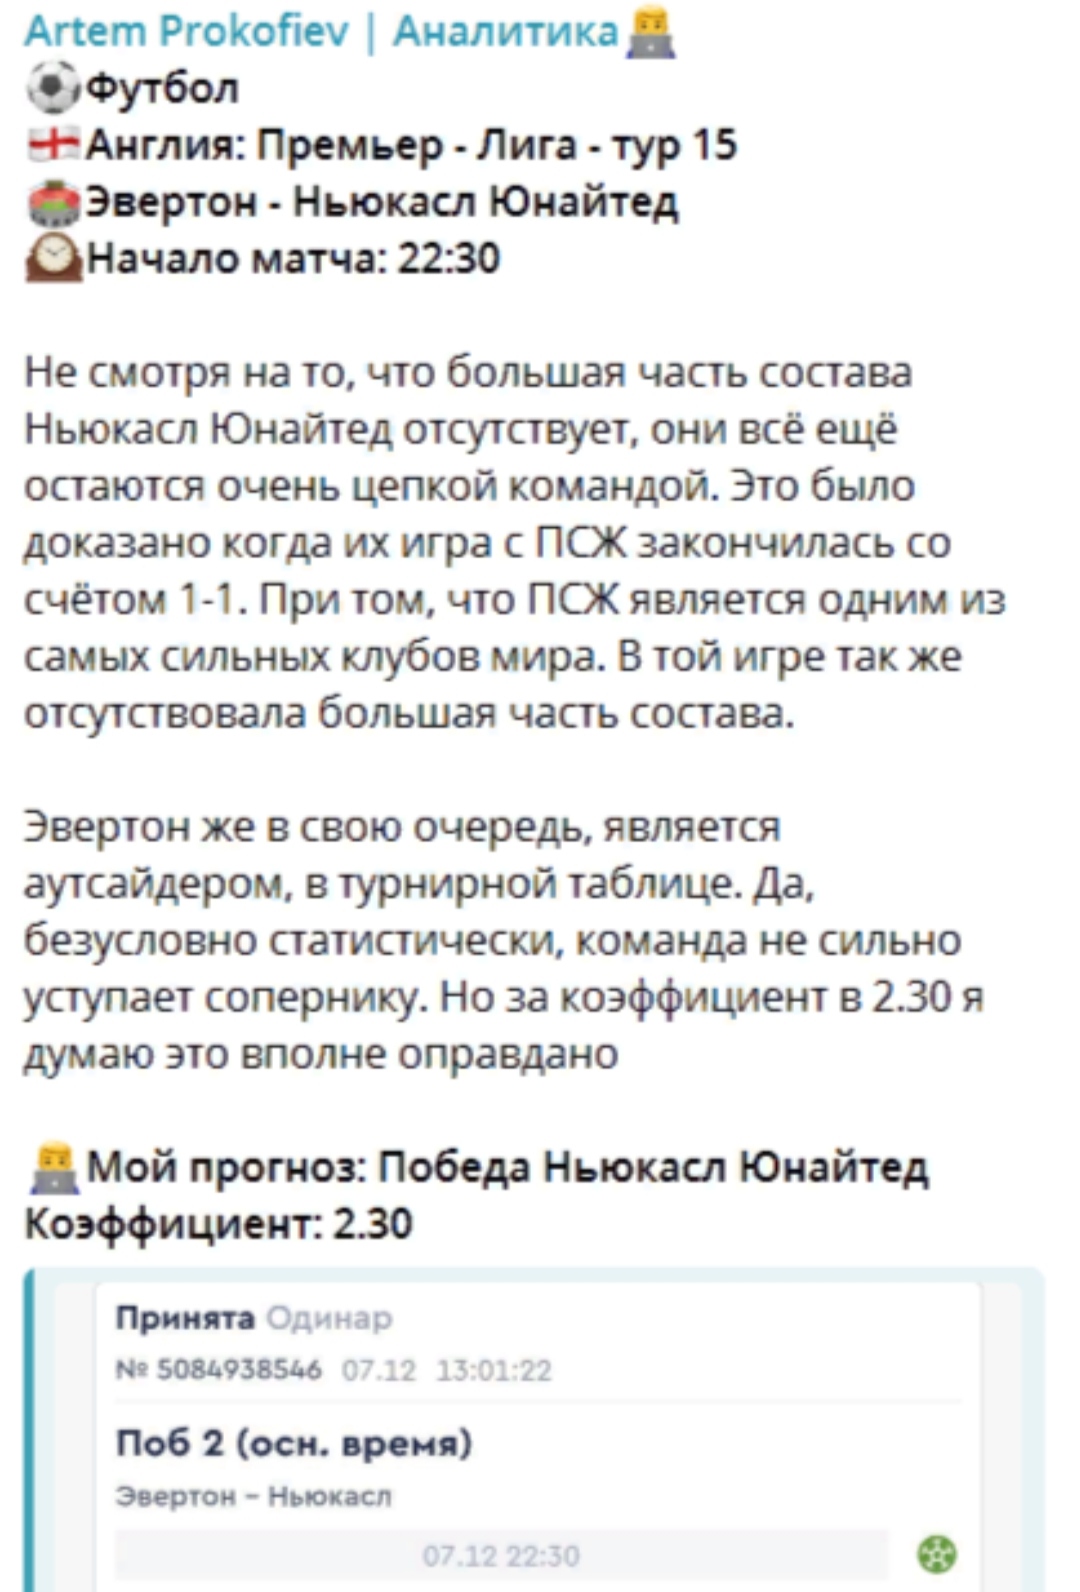 Артем Прокофьев телеграм пост прогноз